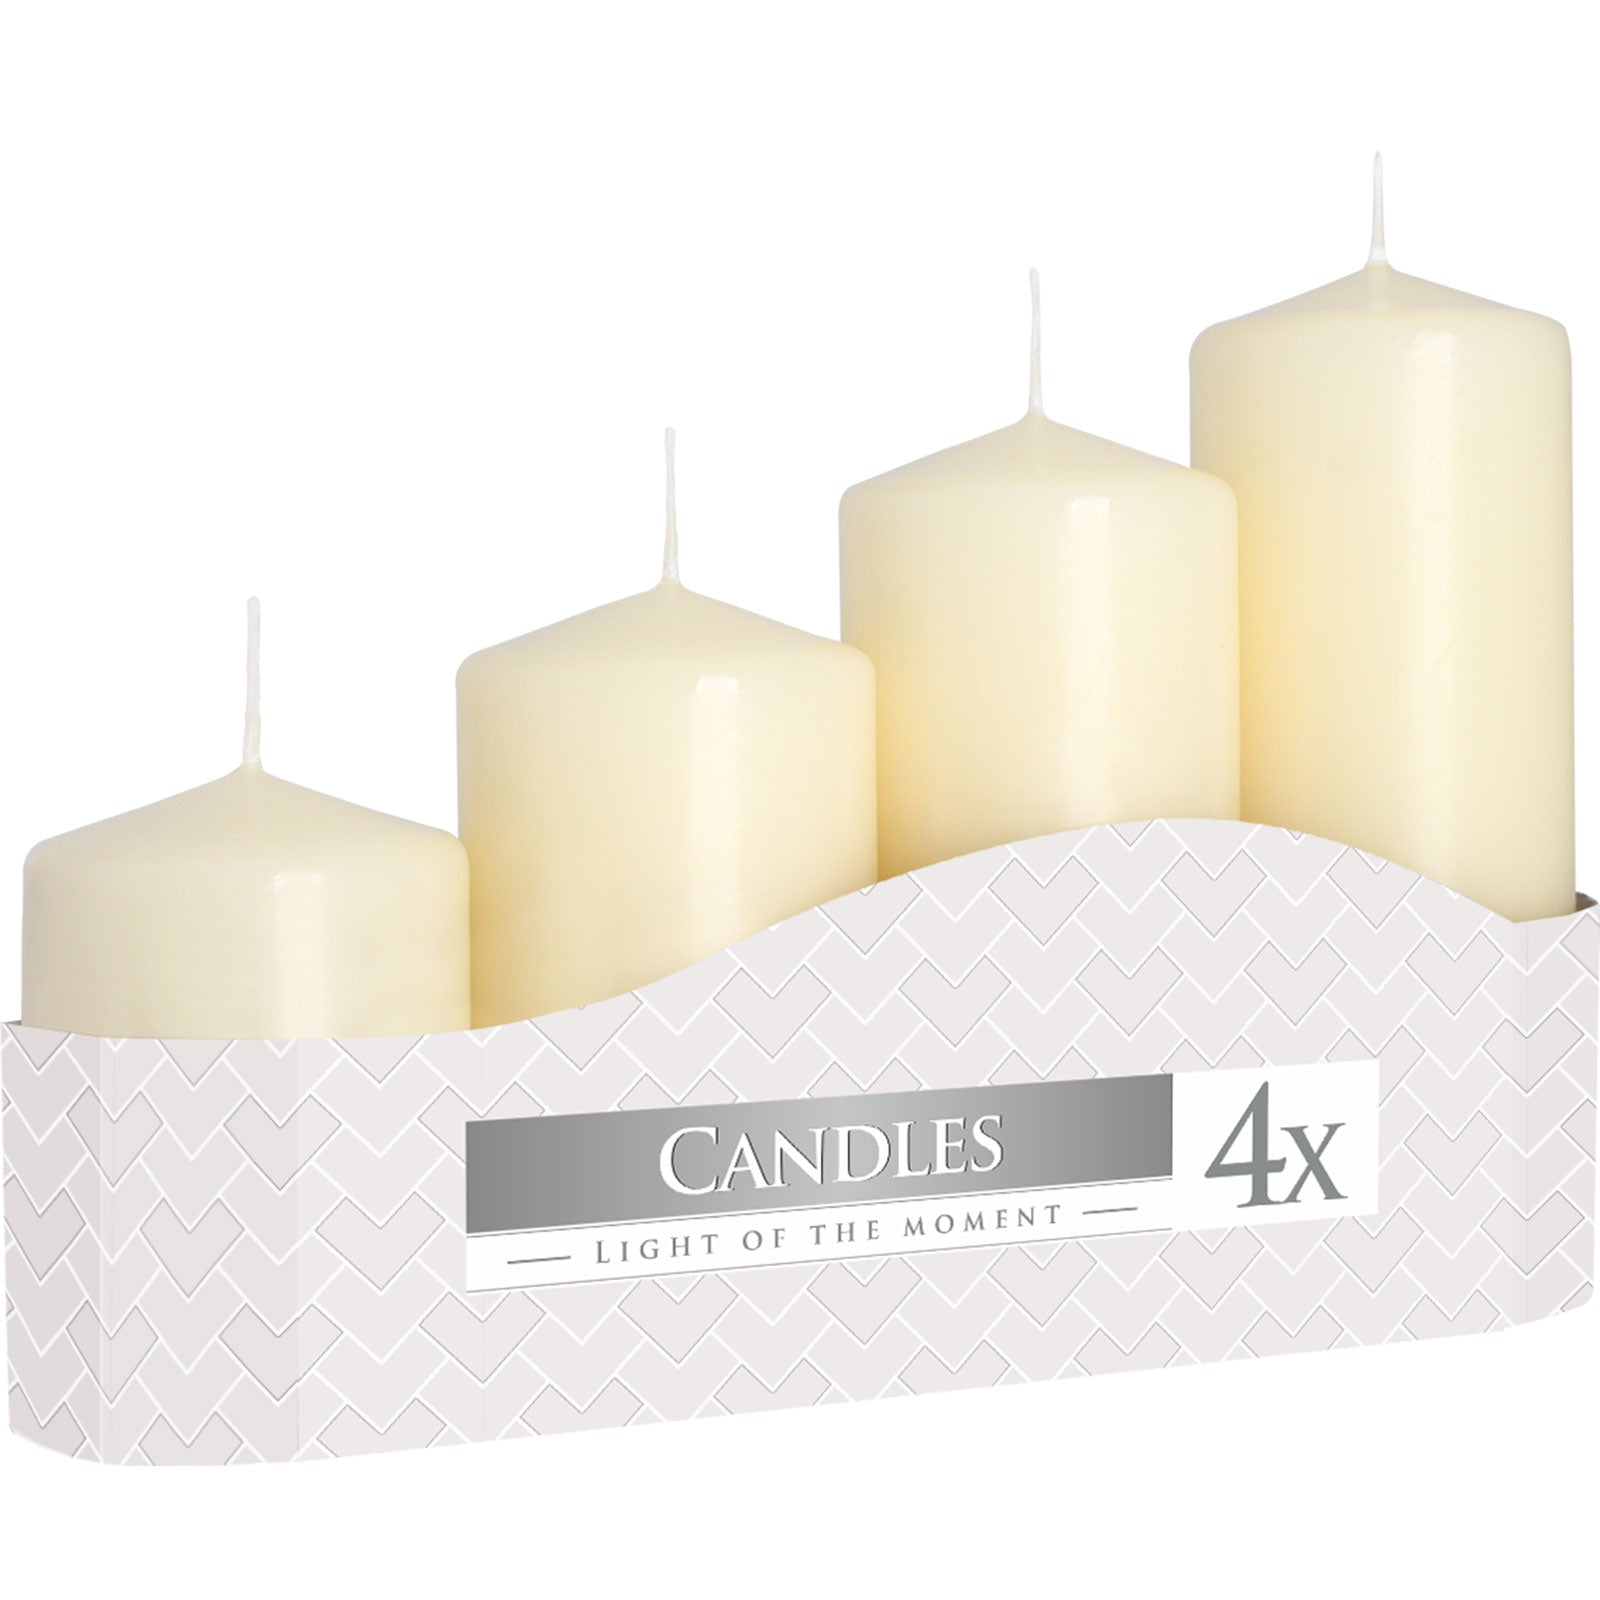 Pillar Candles- Set of 4 various sizes freeshipping - Generosa